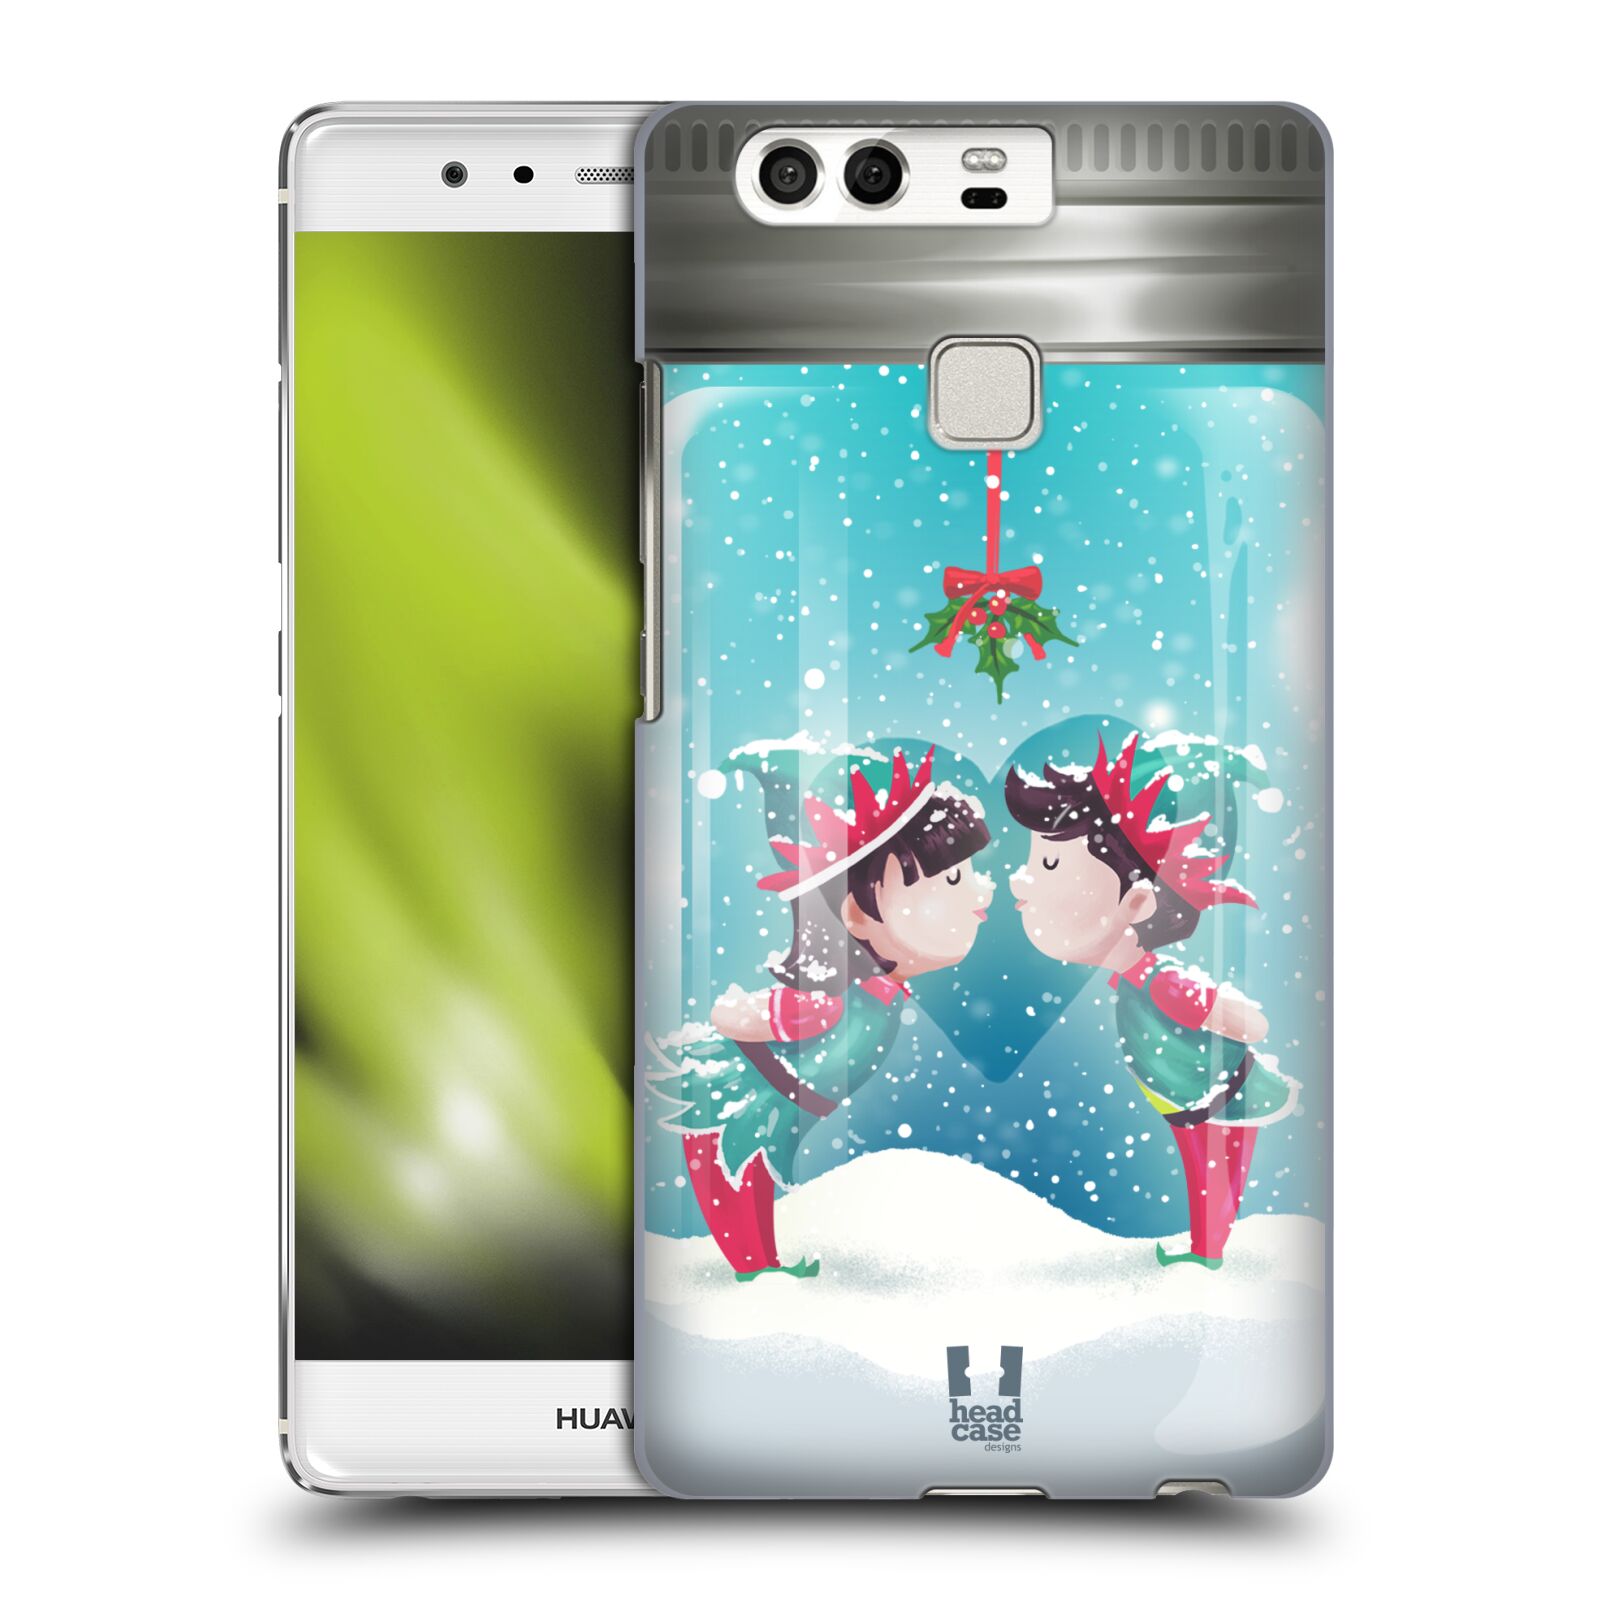 Pouzdro na mobil Huawei P9 / P9 DUAL SIM - HEAD CASE - Vánoční polibek